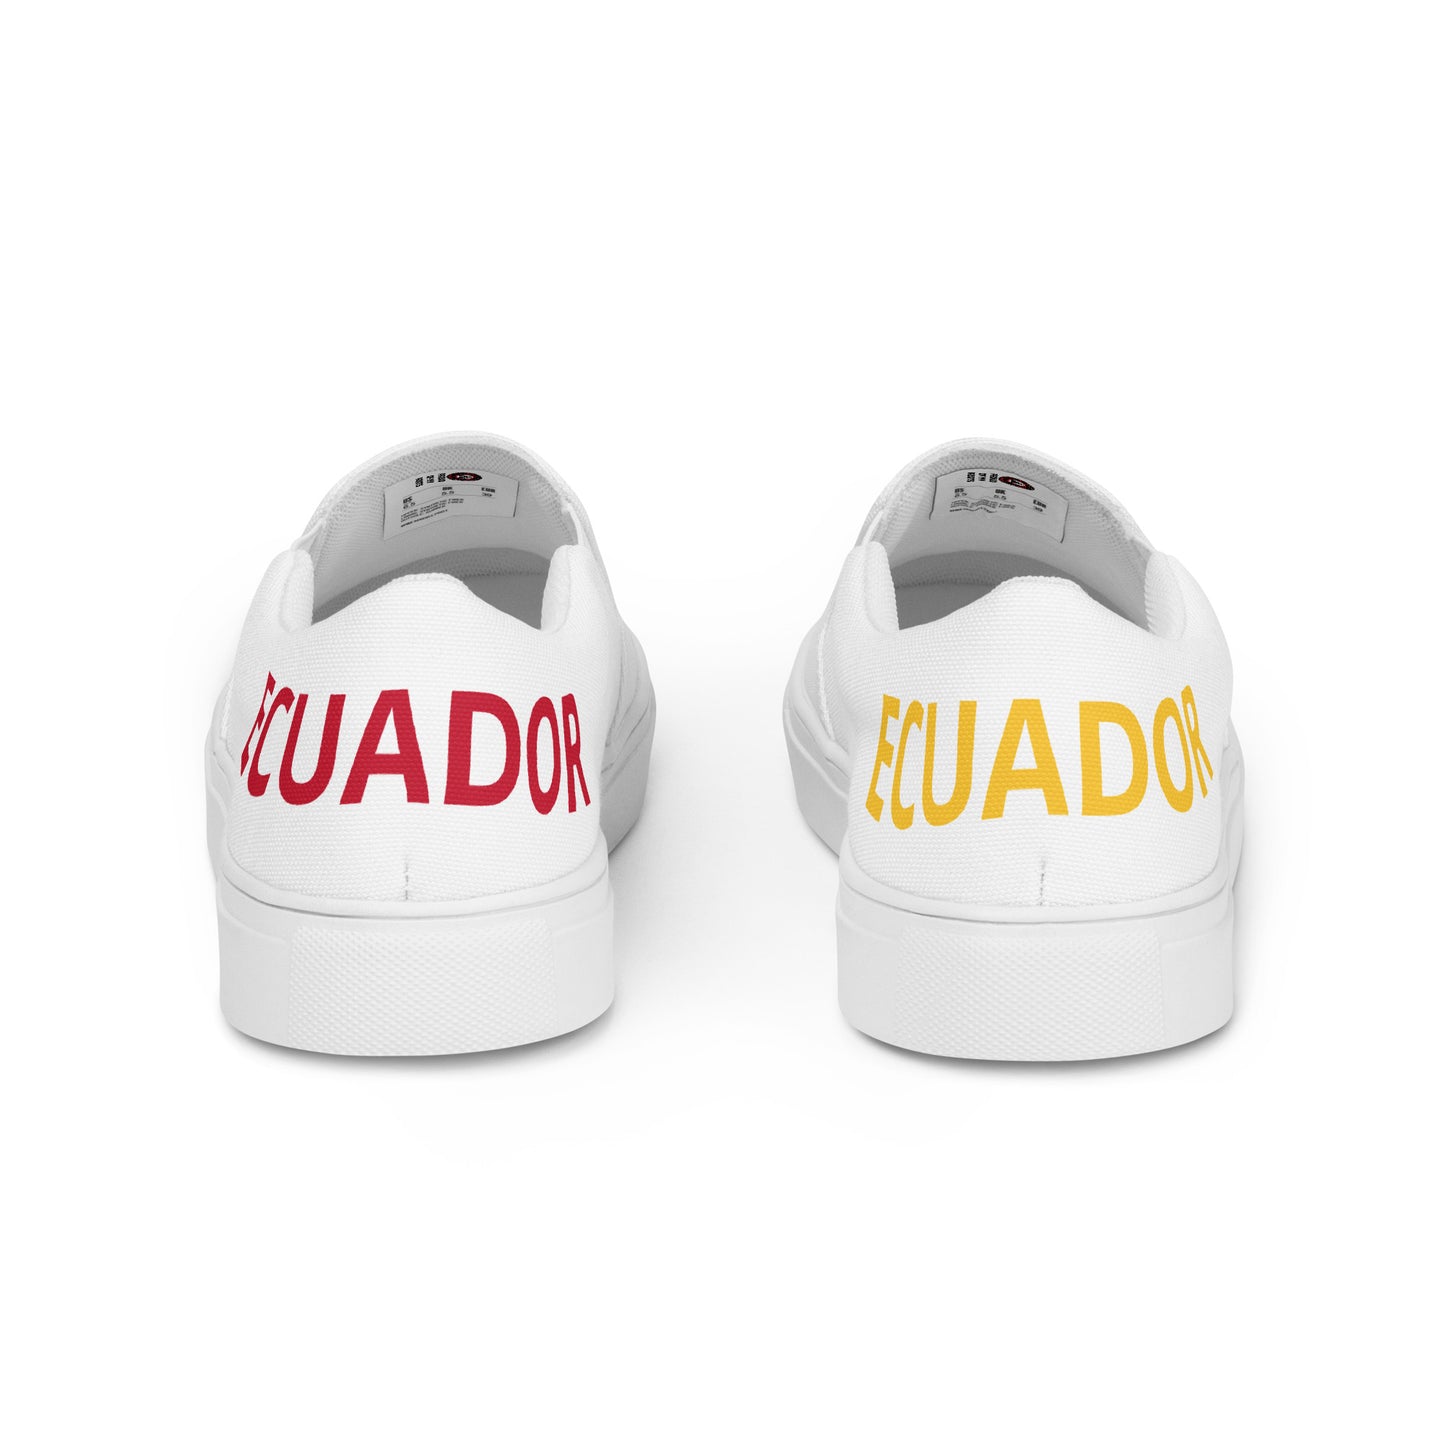 Ecuador - Men - White - Slip-on shoes